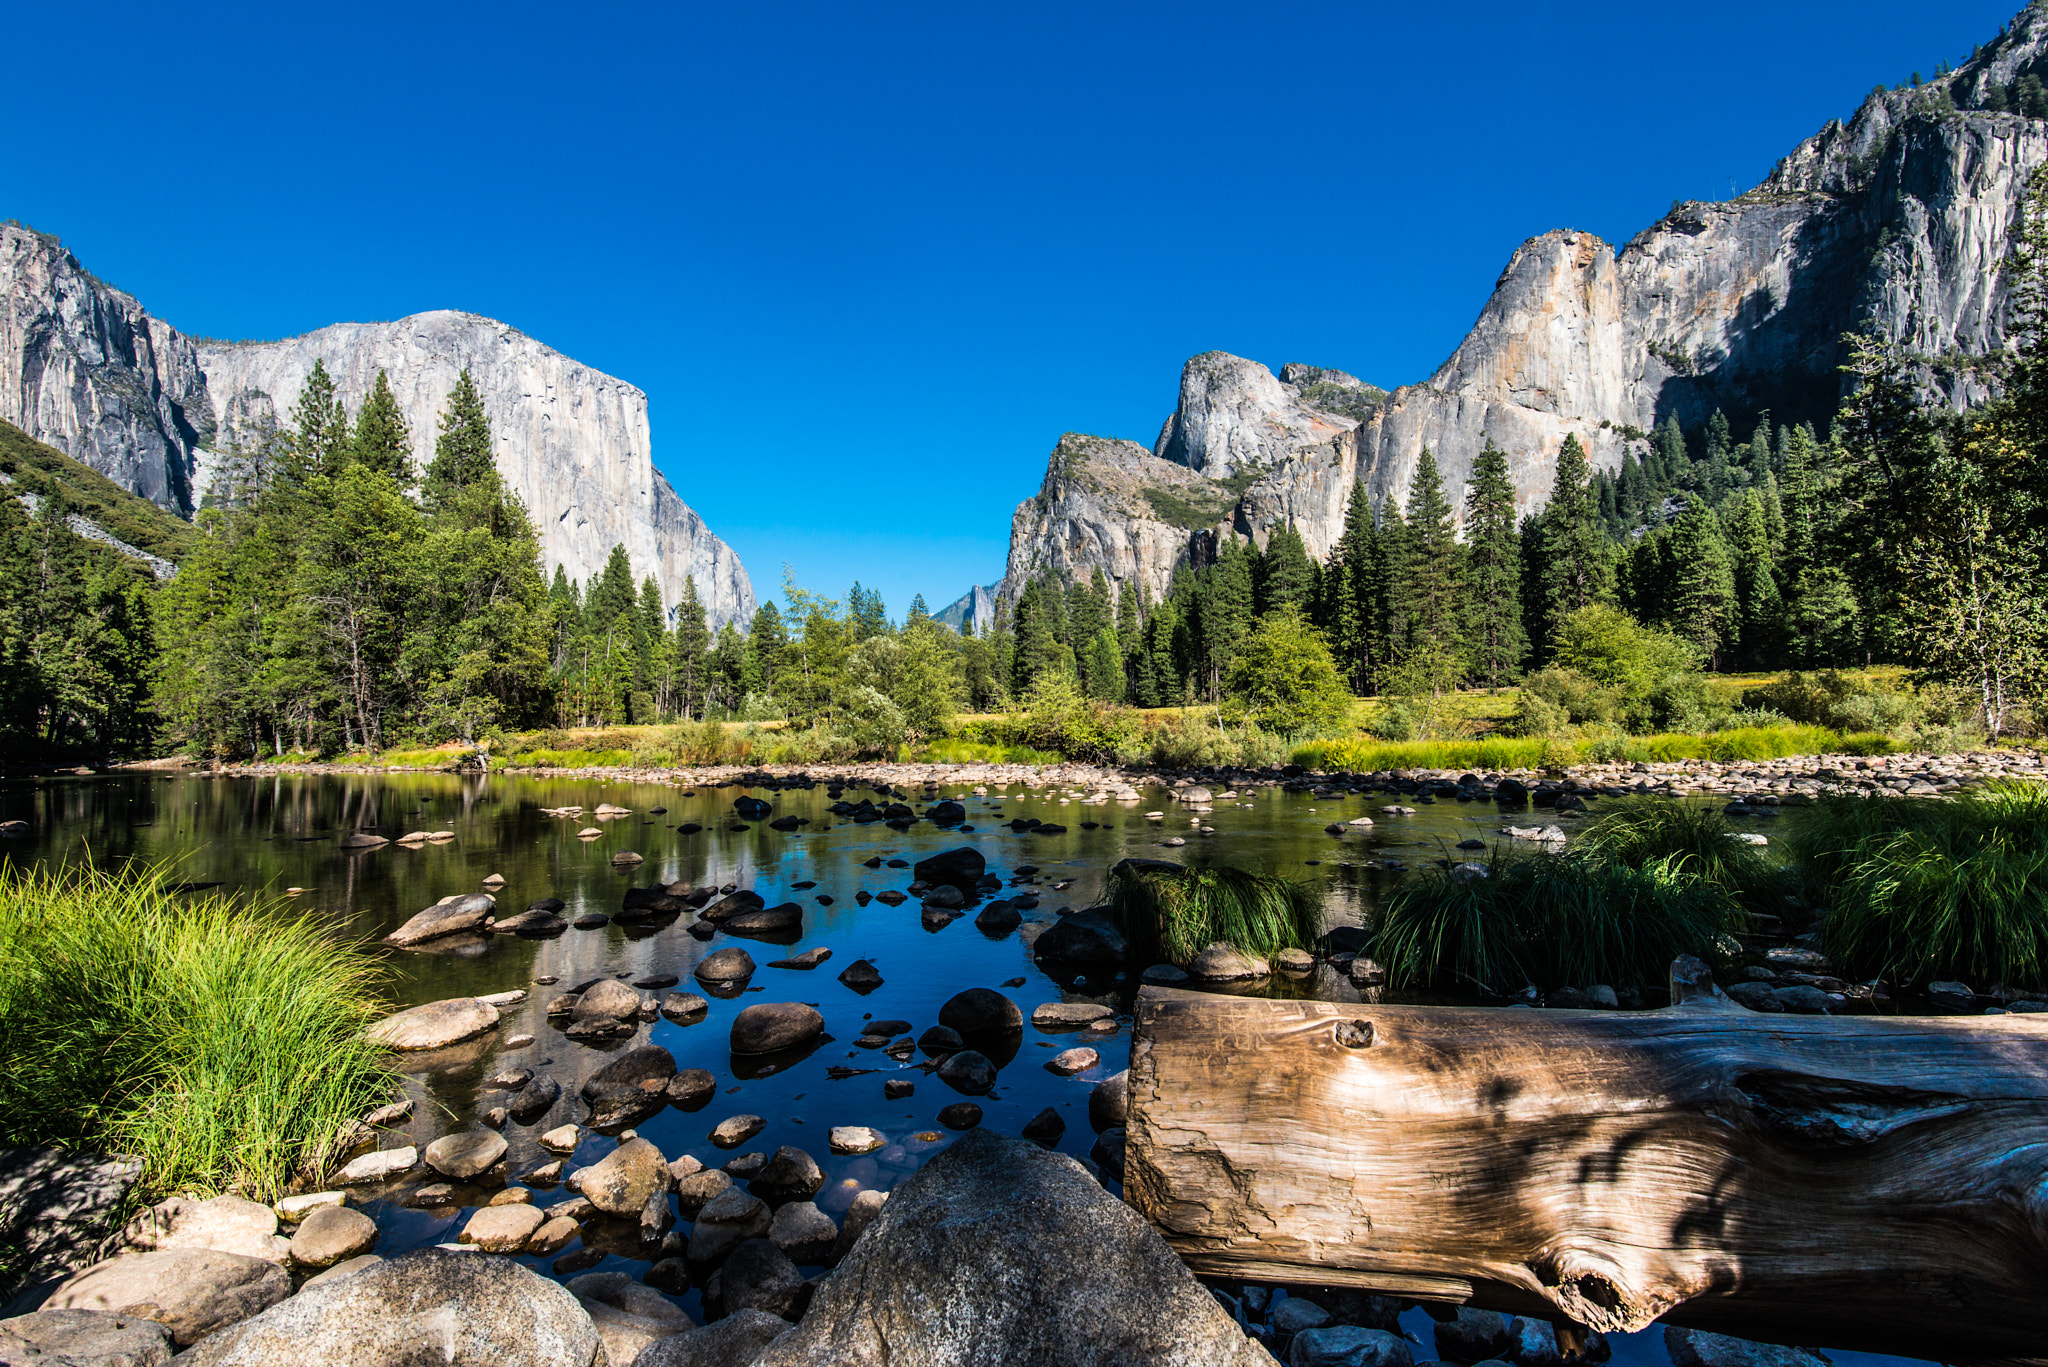 Mùa hè tại Vườn quốc gia Yosemite là thời điểm tuyệt vời để bạn trốn thoát khỏi cuộc sống mệt mỏi và thưởng thức cảnh quan thiên nhiên đẹp như tranh vẽ. Hàng loạt hình ảnh của mùa hè tại Yosemite đang chờ bạn khám phá.